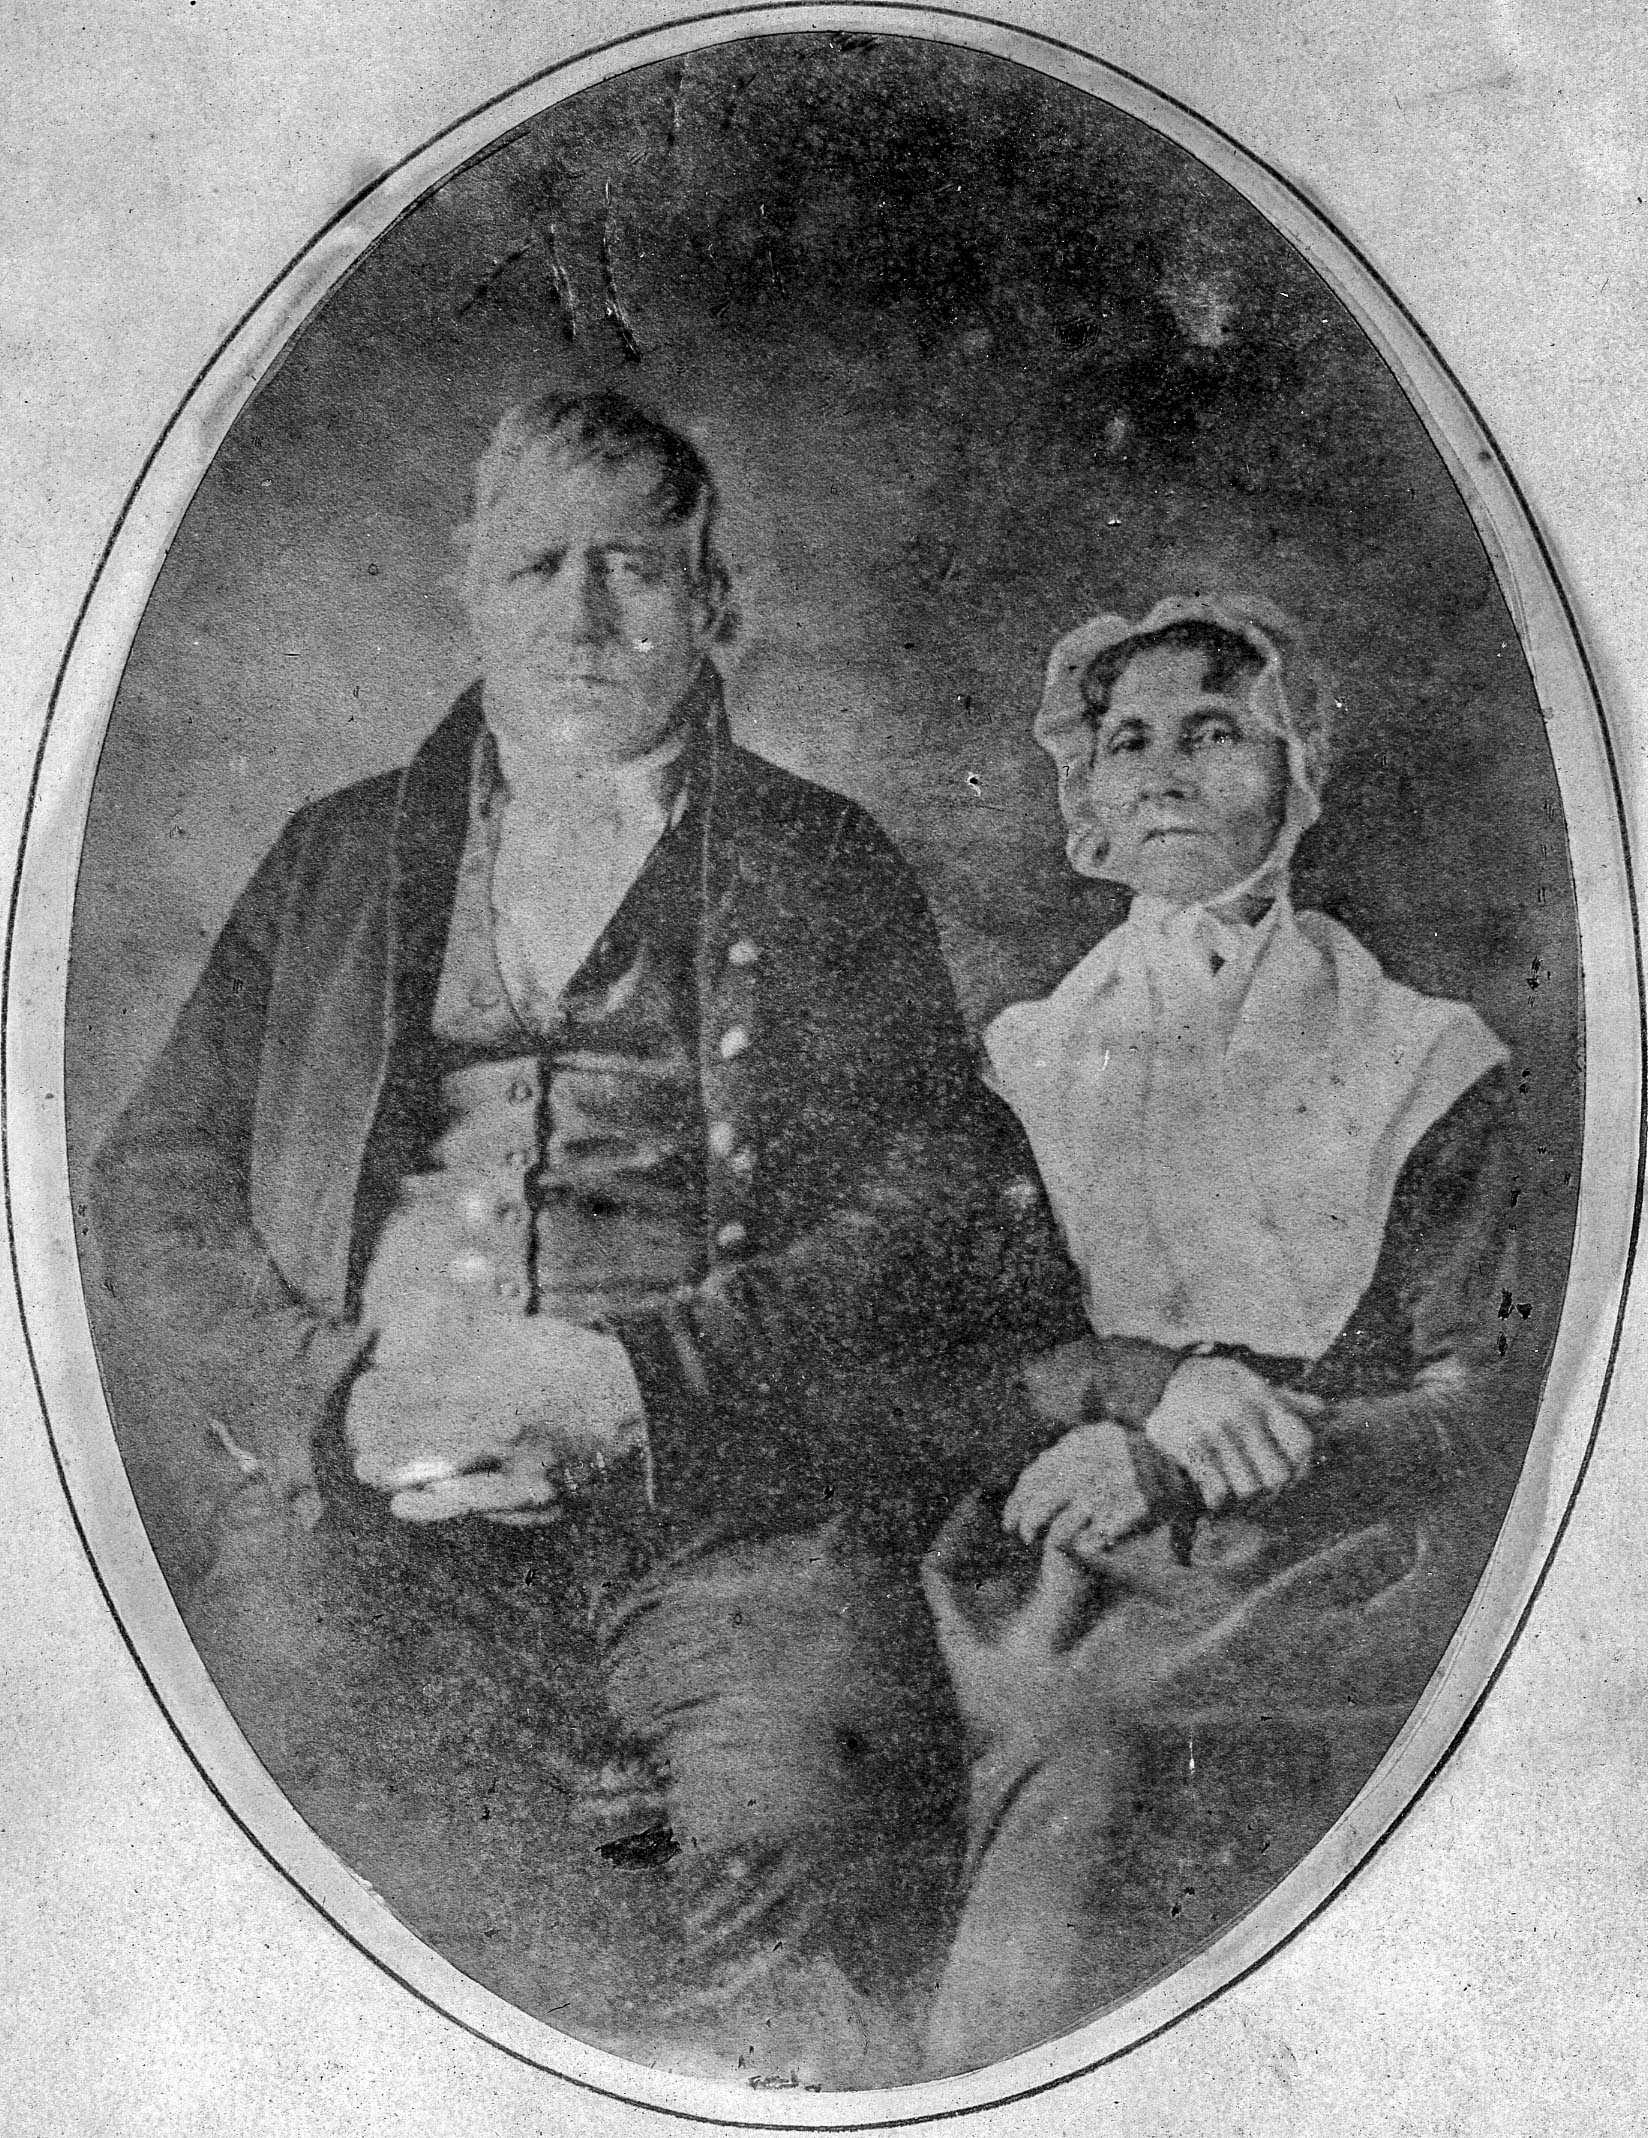 Thomas Coles and Amelia Hewlett Coles